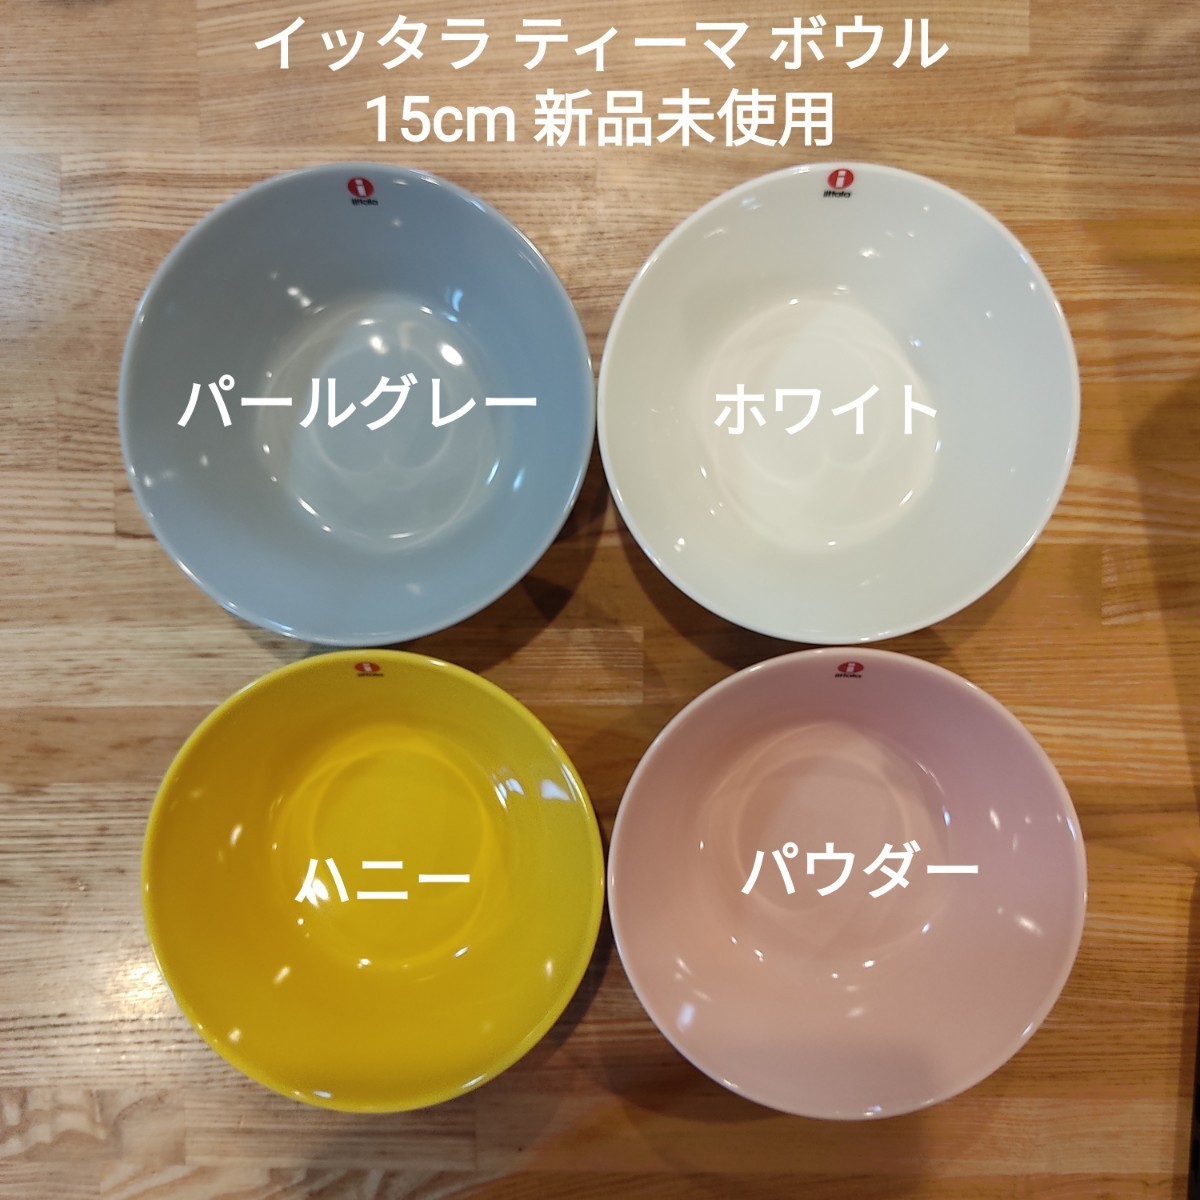 【新品】イッタラ ティーマ 15cm ボウル 4色セット